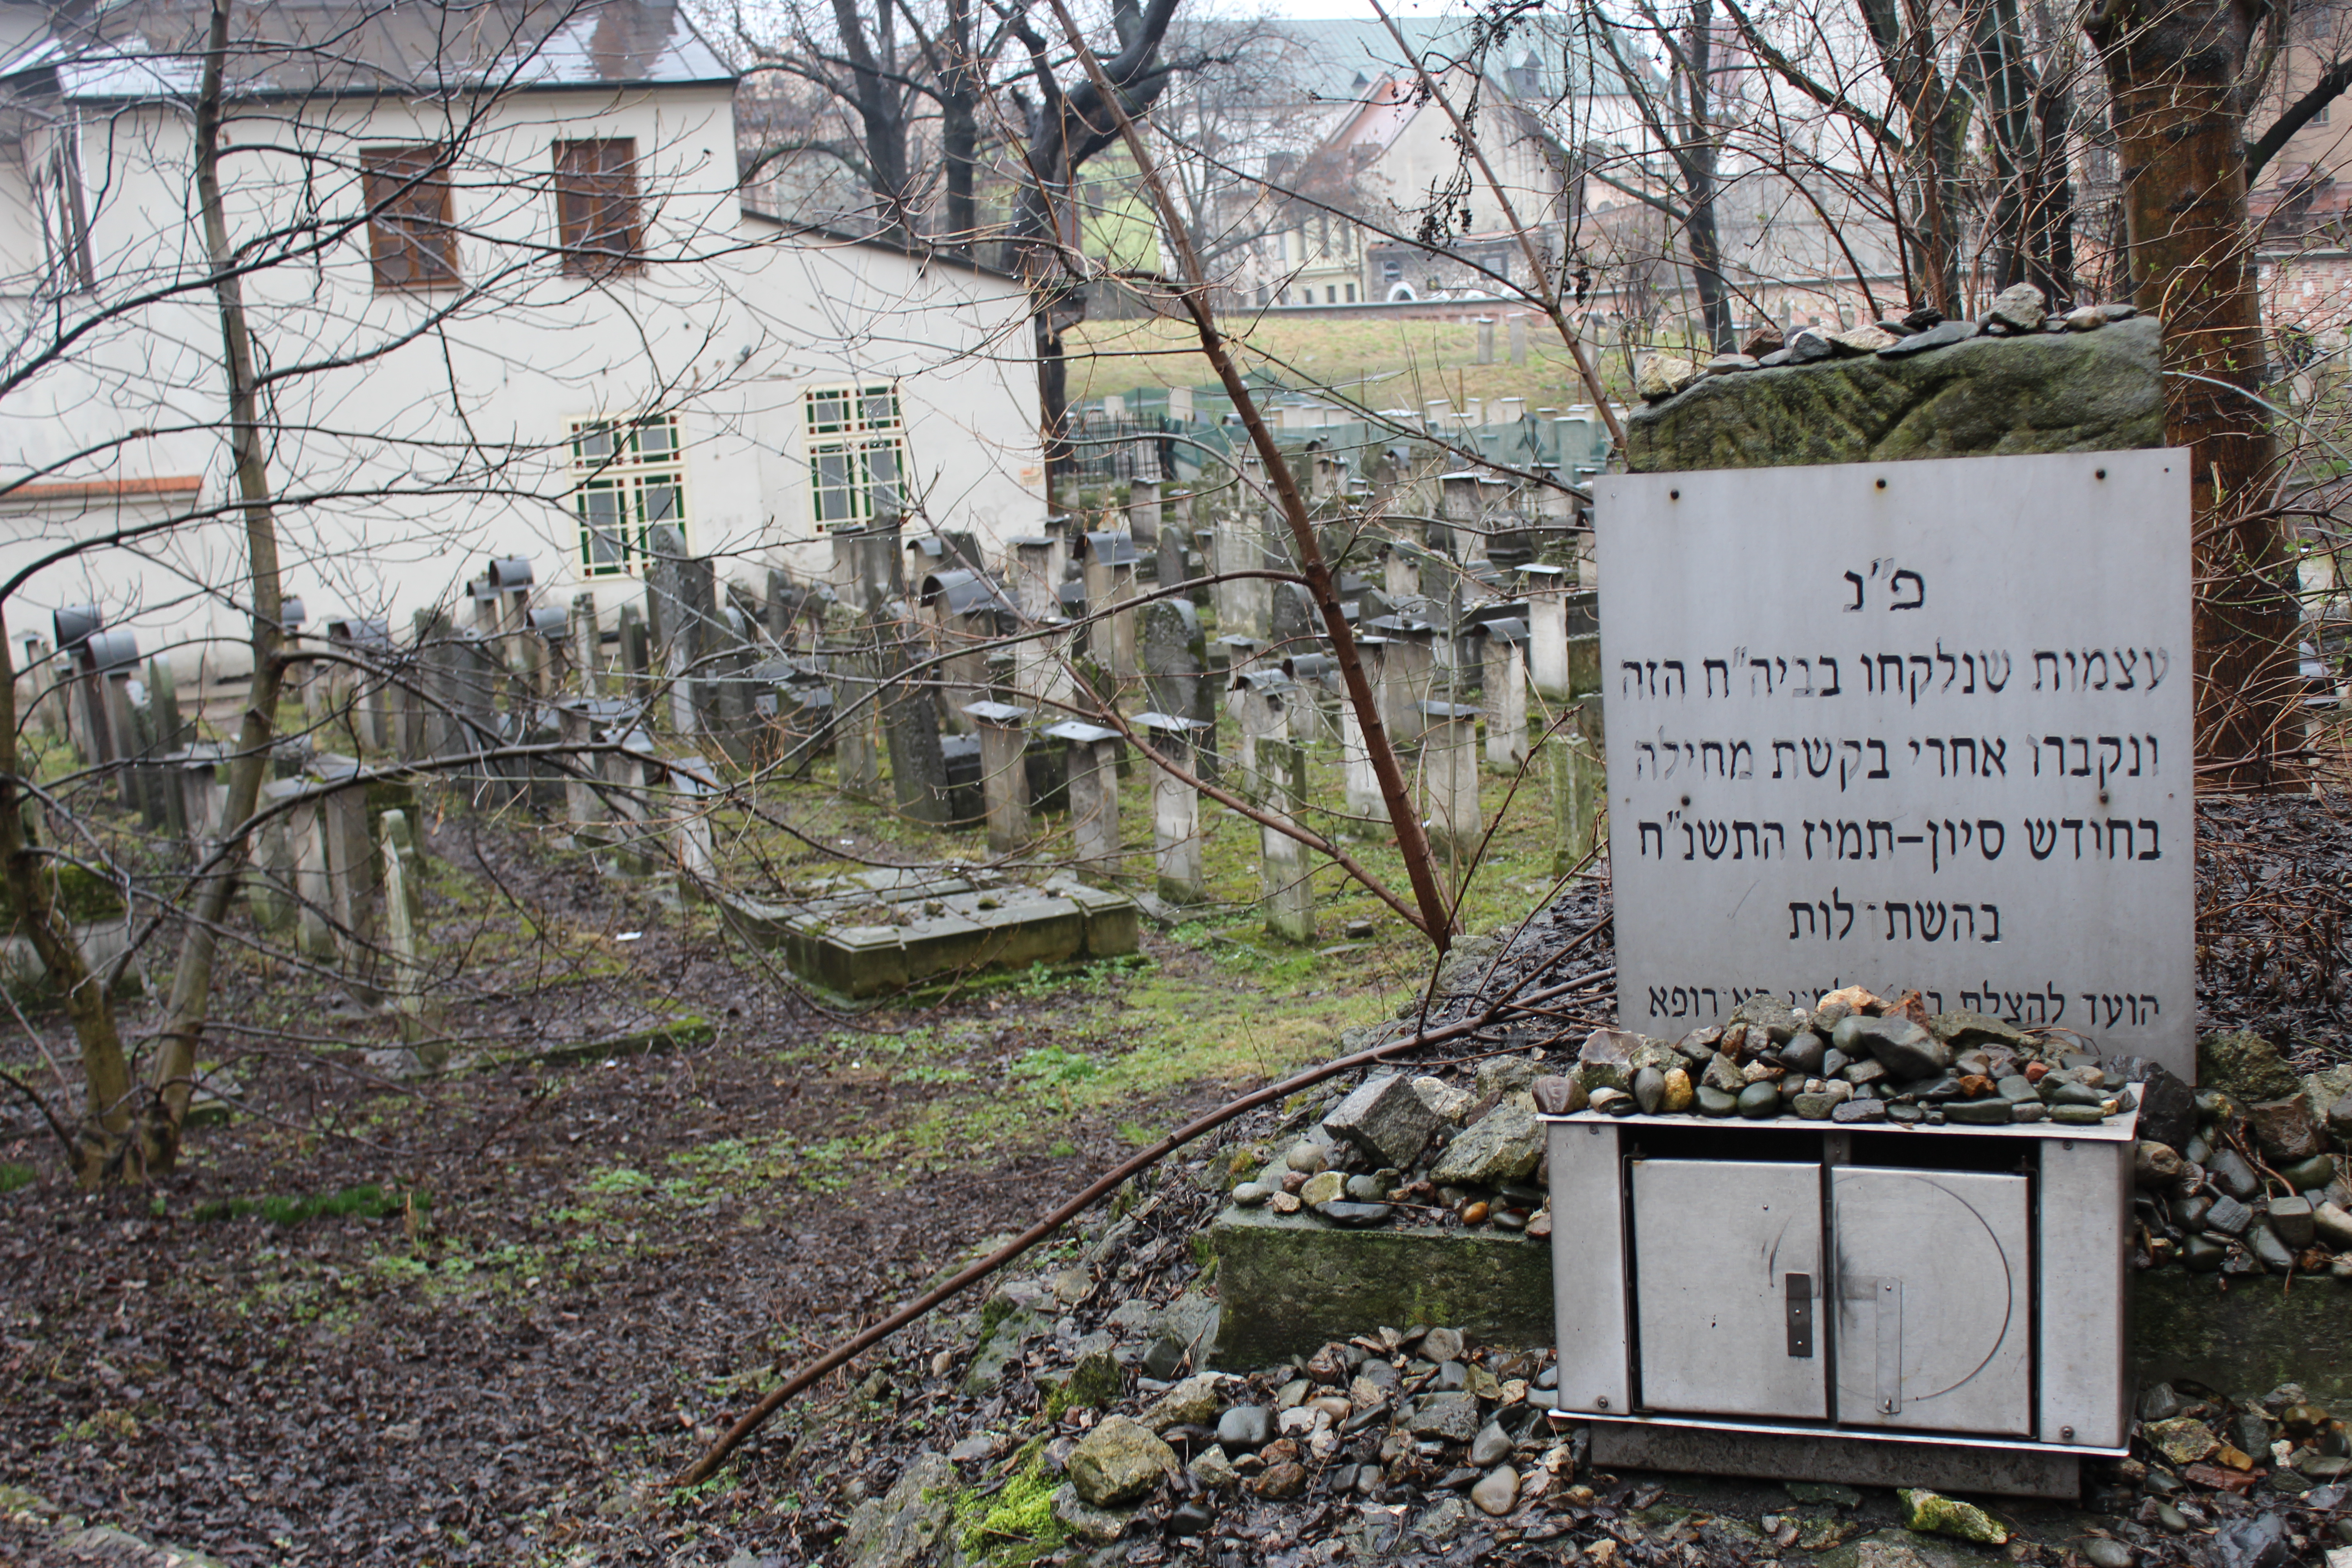 Zu sehen ist ein Friedhof, davor ein Schild mit hebräischer Sprache.